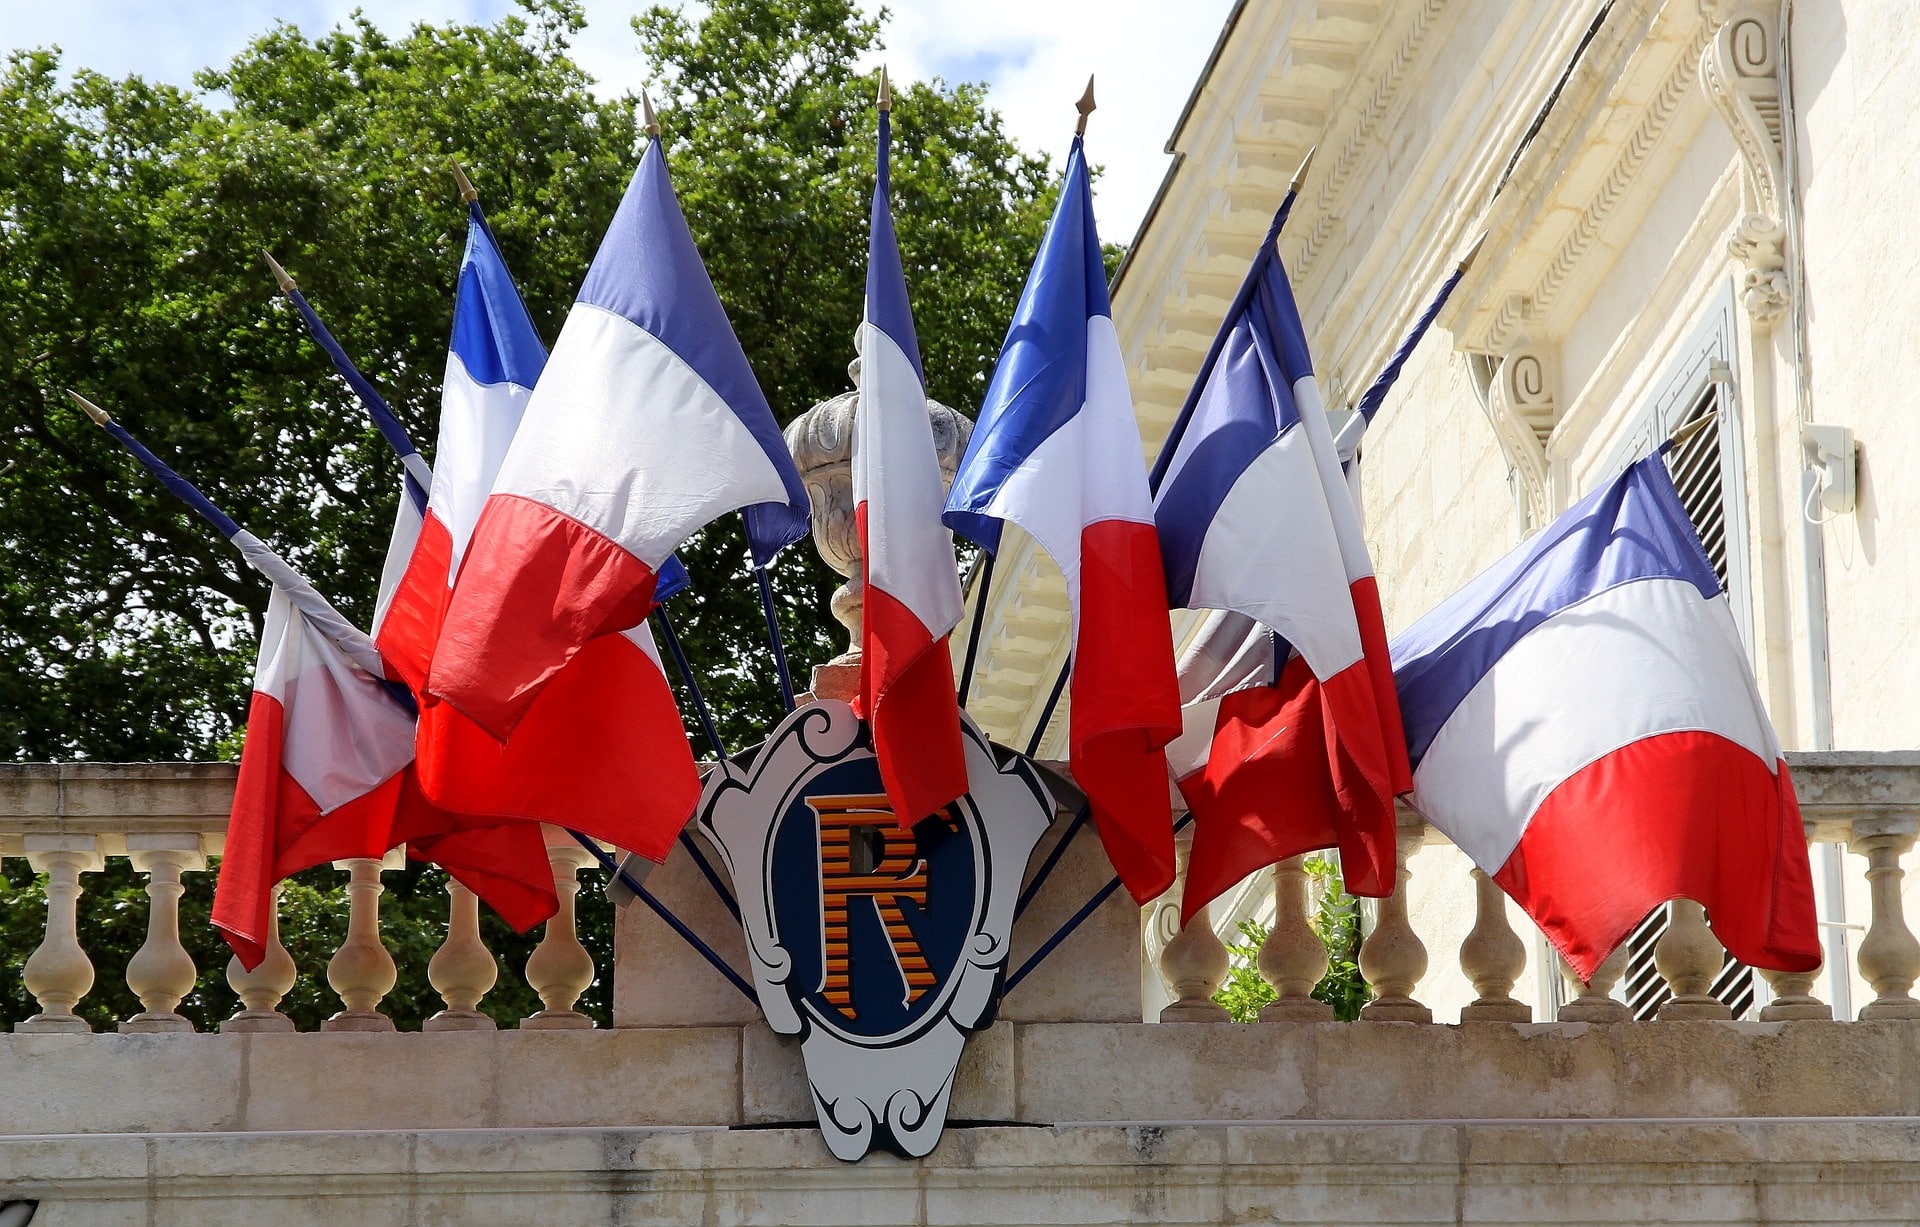 drapeaux français